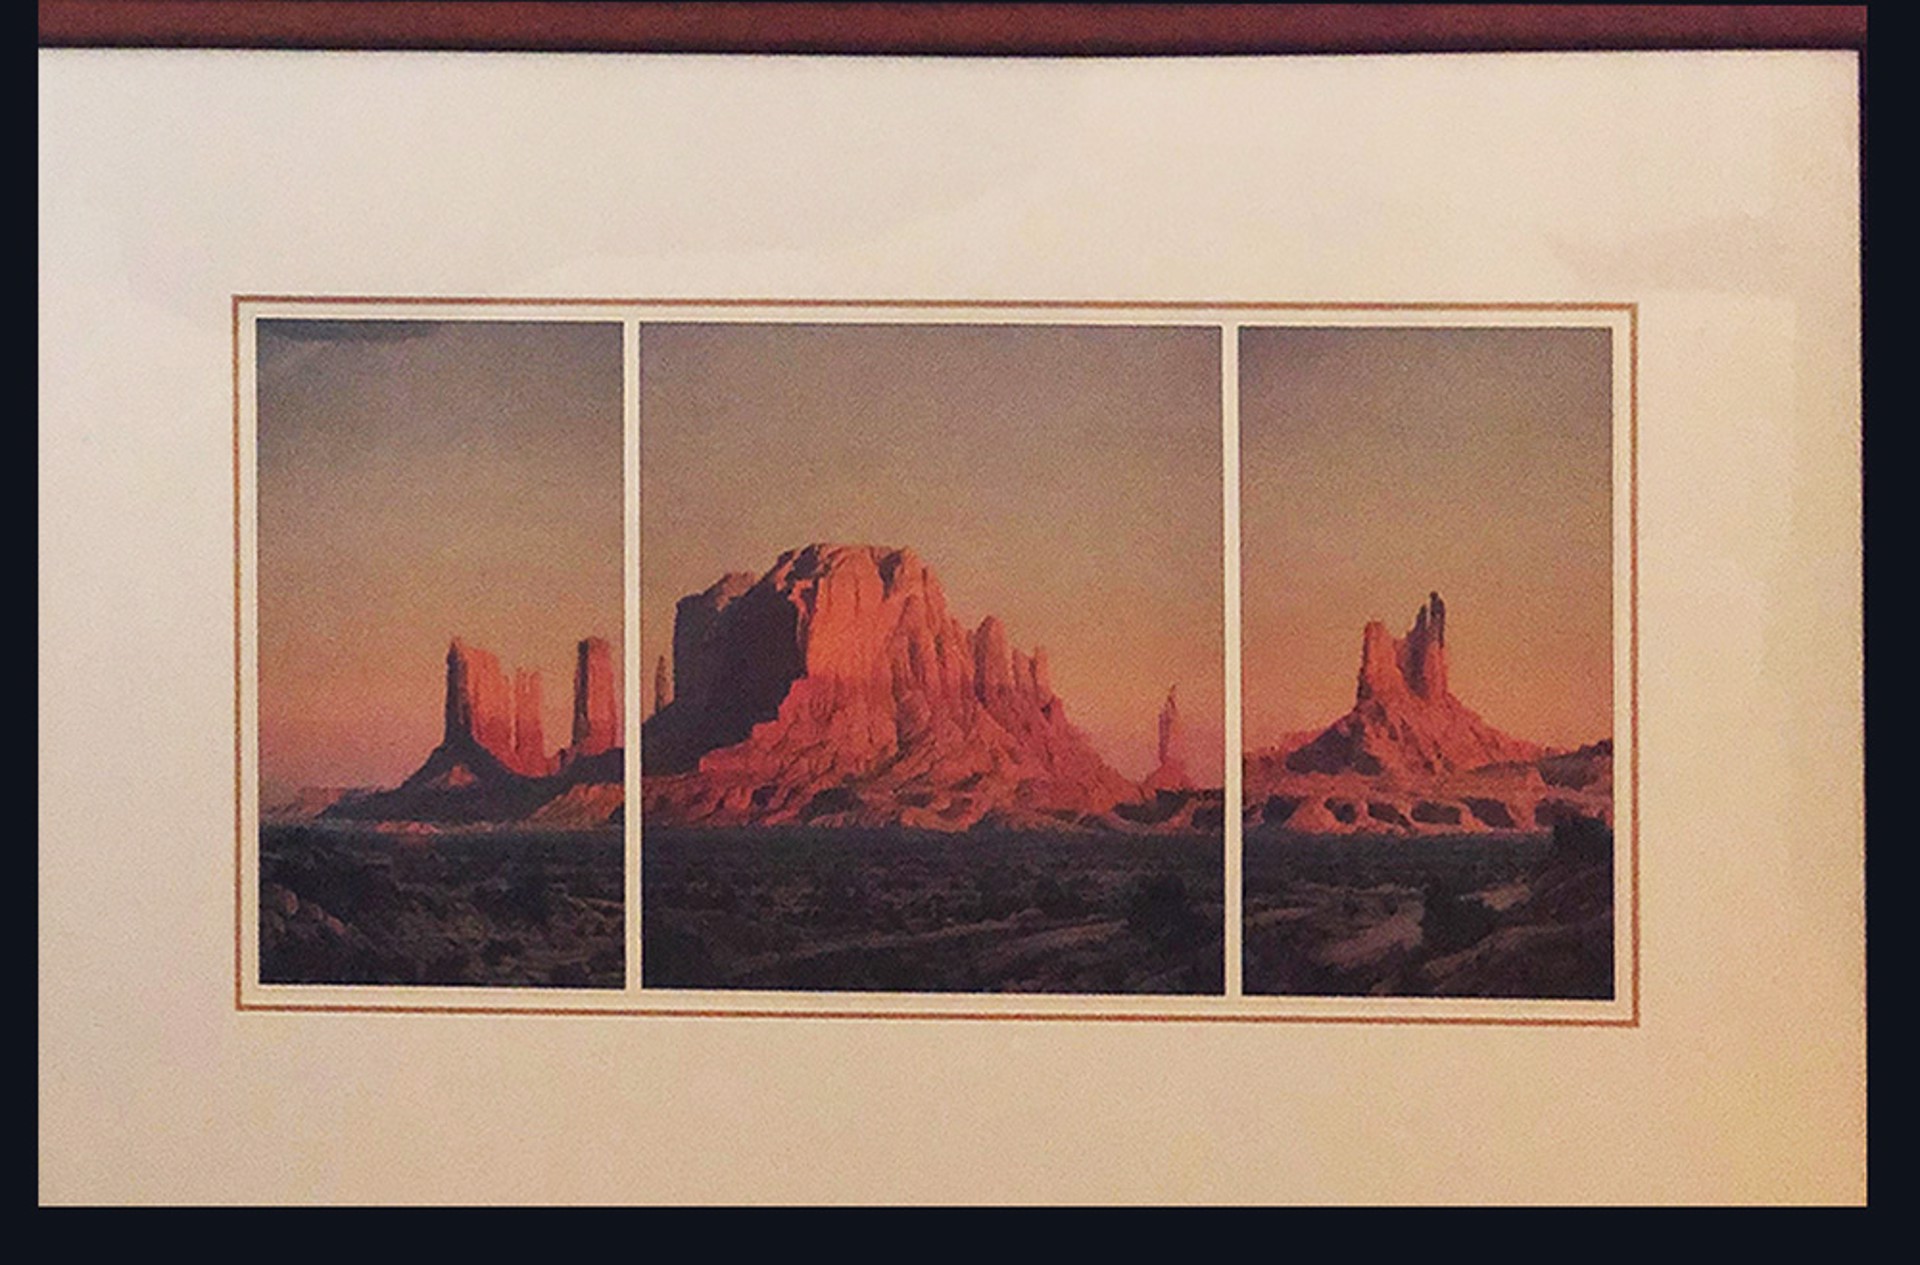 Cliff Triptych by Artist Unknown